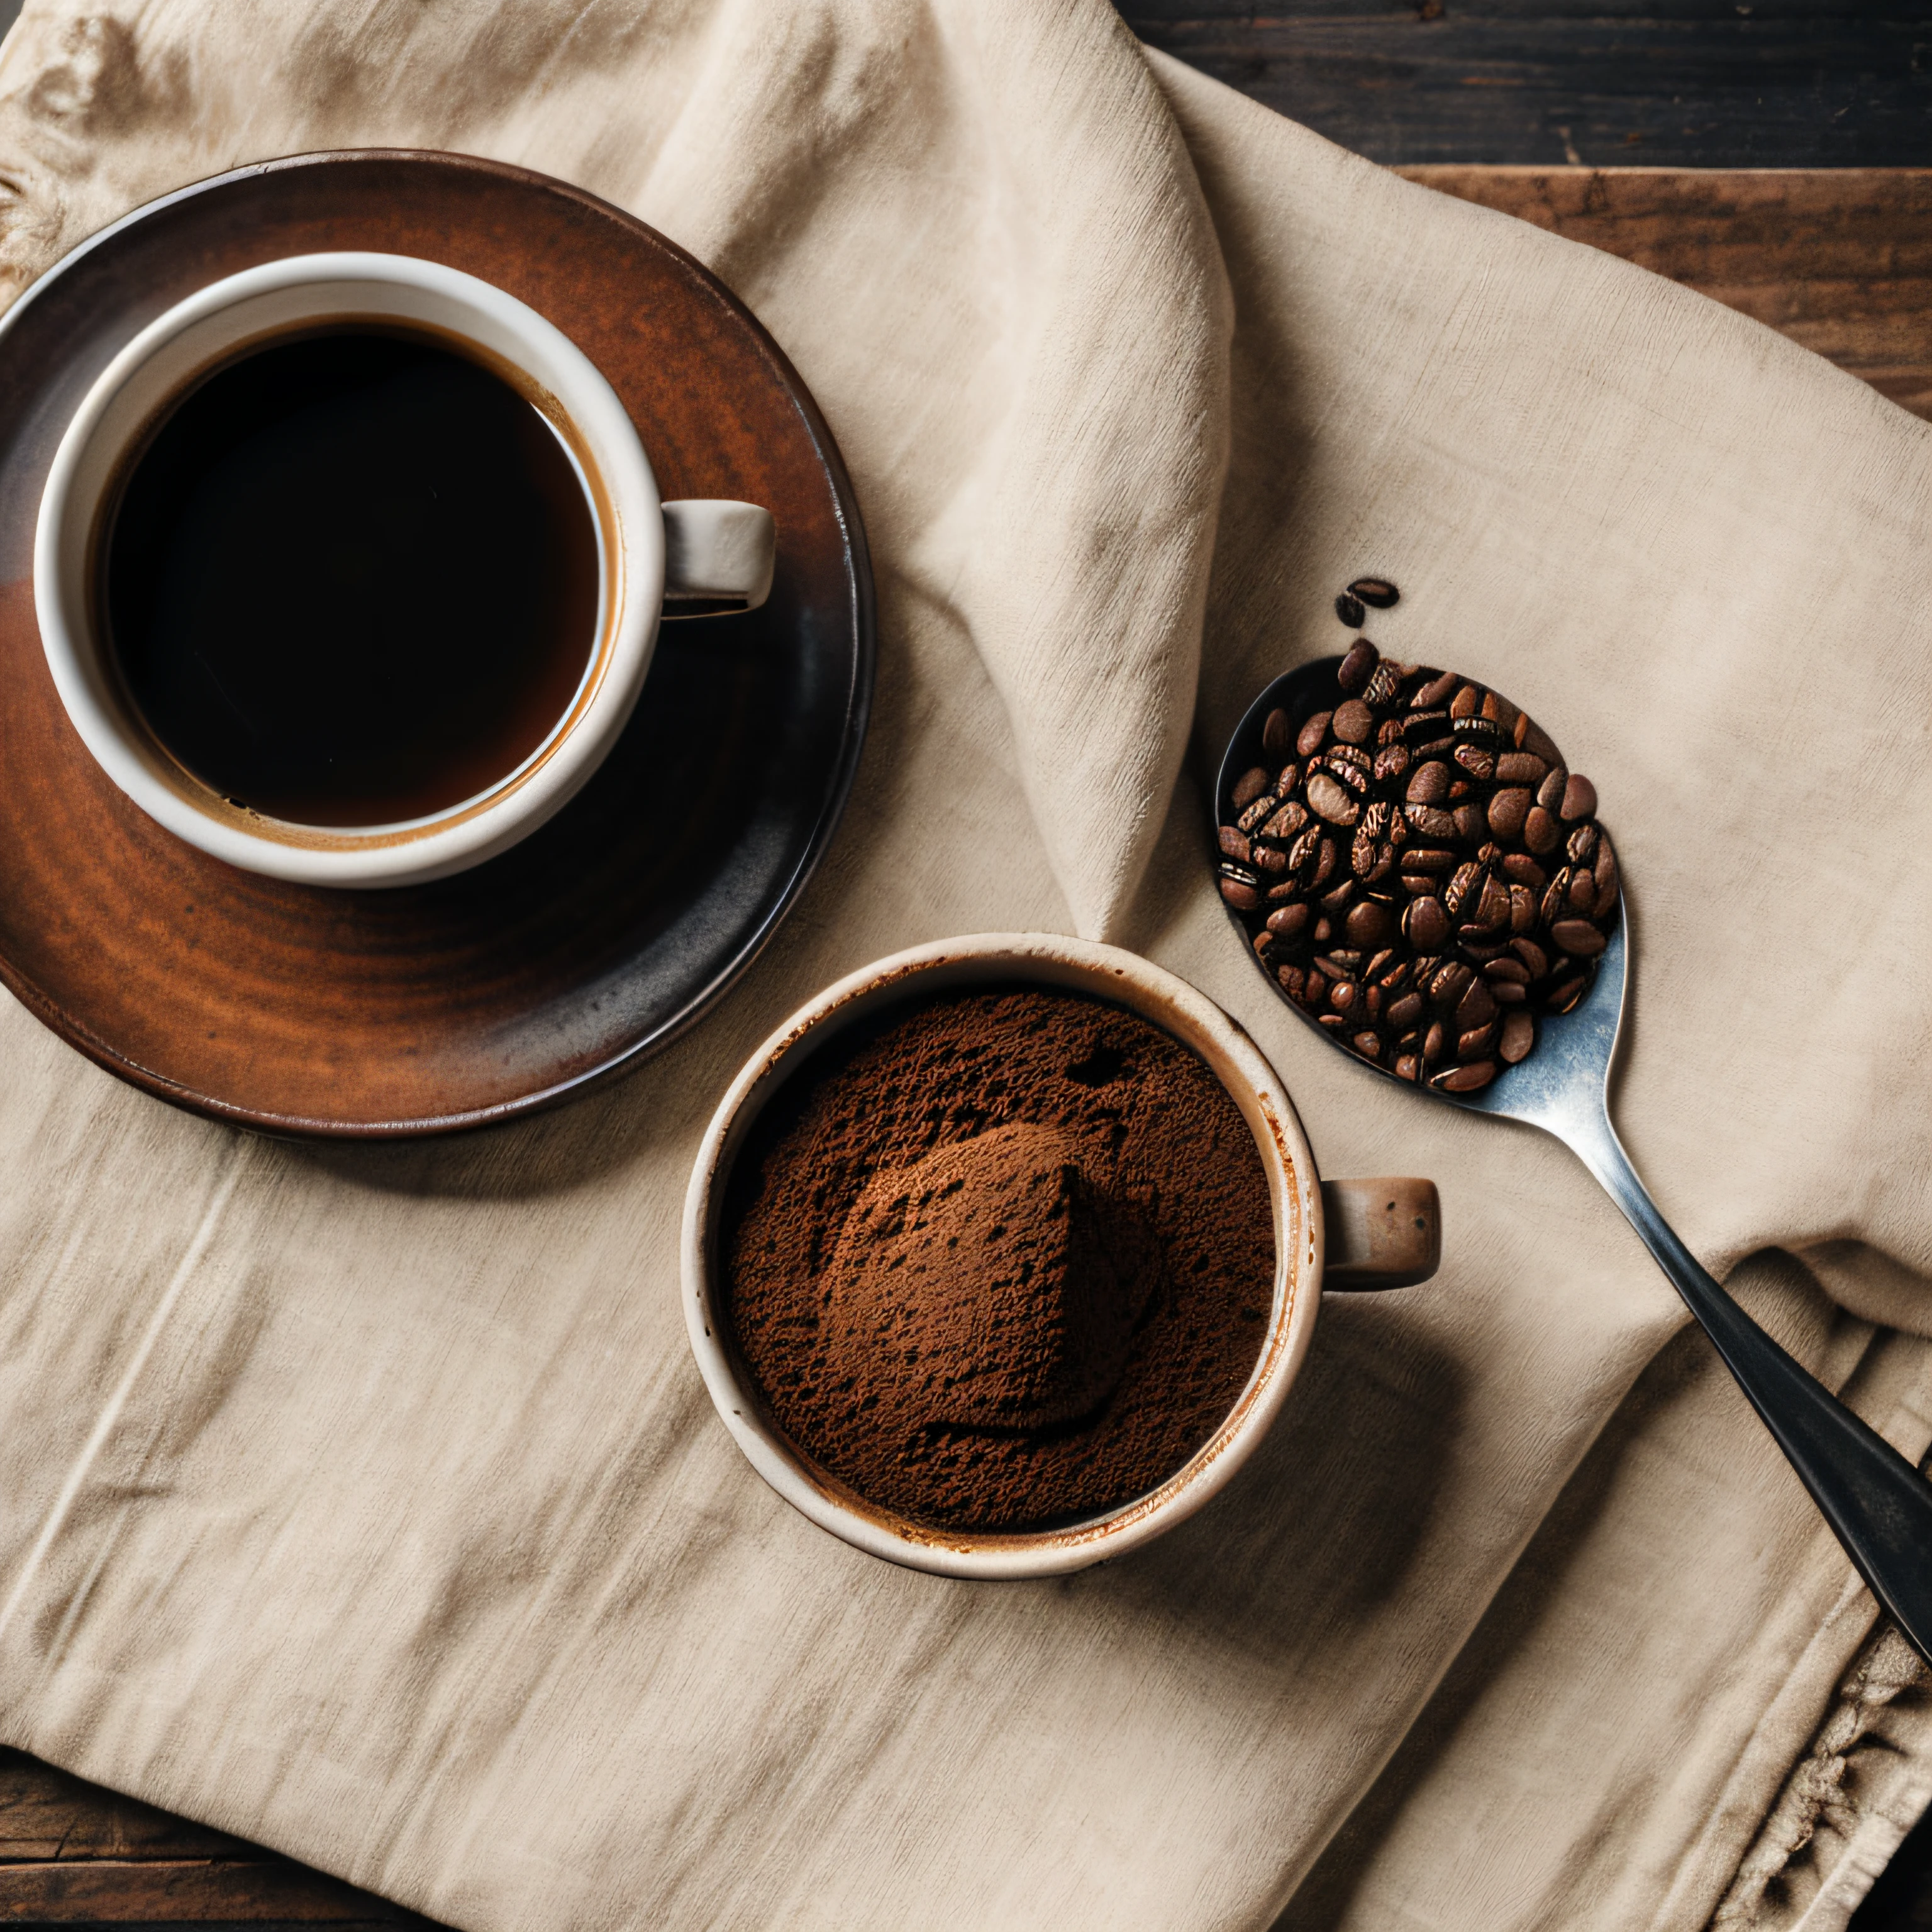 قهوة محمصة وحبوب موزعة على قطعة قماش مع فنجان من القهوة الطينية تم تصويرها بكاميرا ماكرو فائقة الواقعية مقاس 35 مم HDR